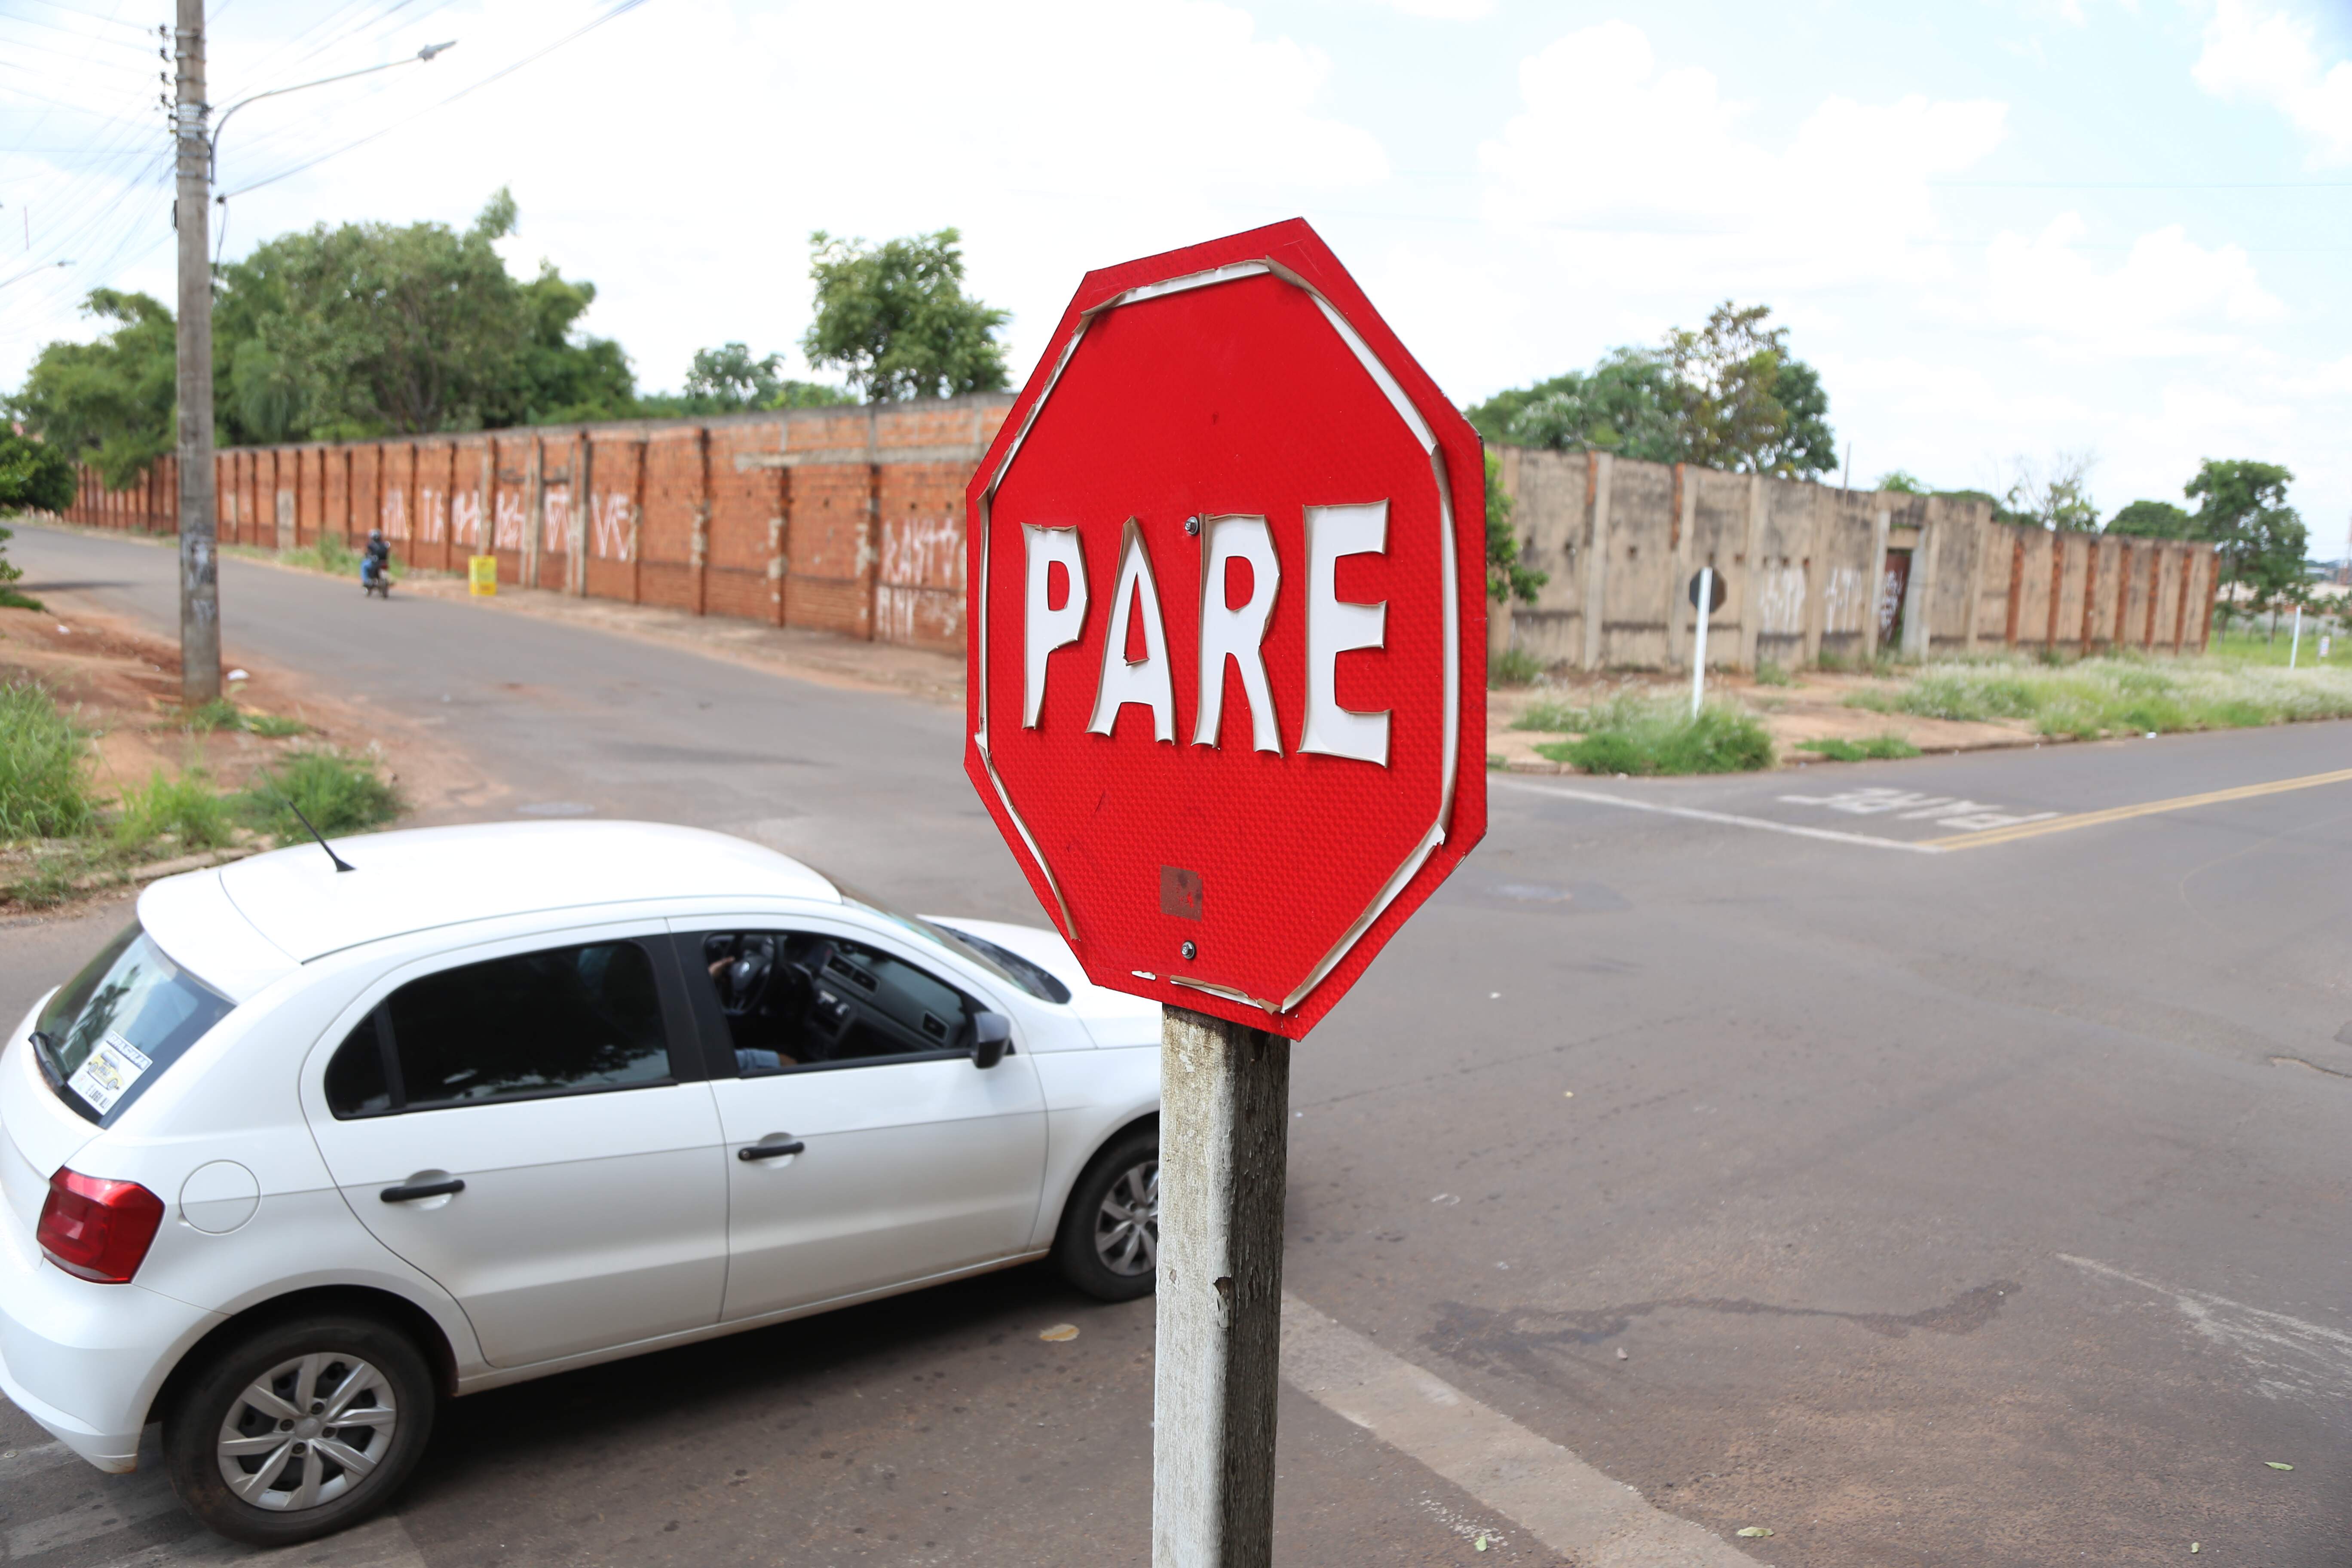 img 1729 - Com acidentes frequentes, cruzamentos perigosos exigem cuidado redobrado em Campo Grande